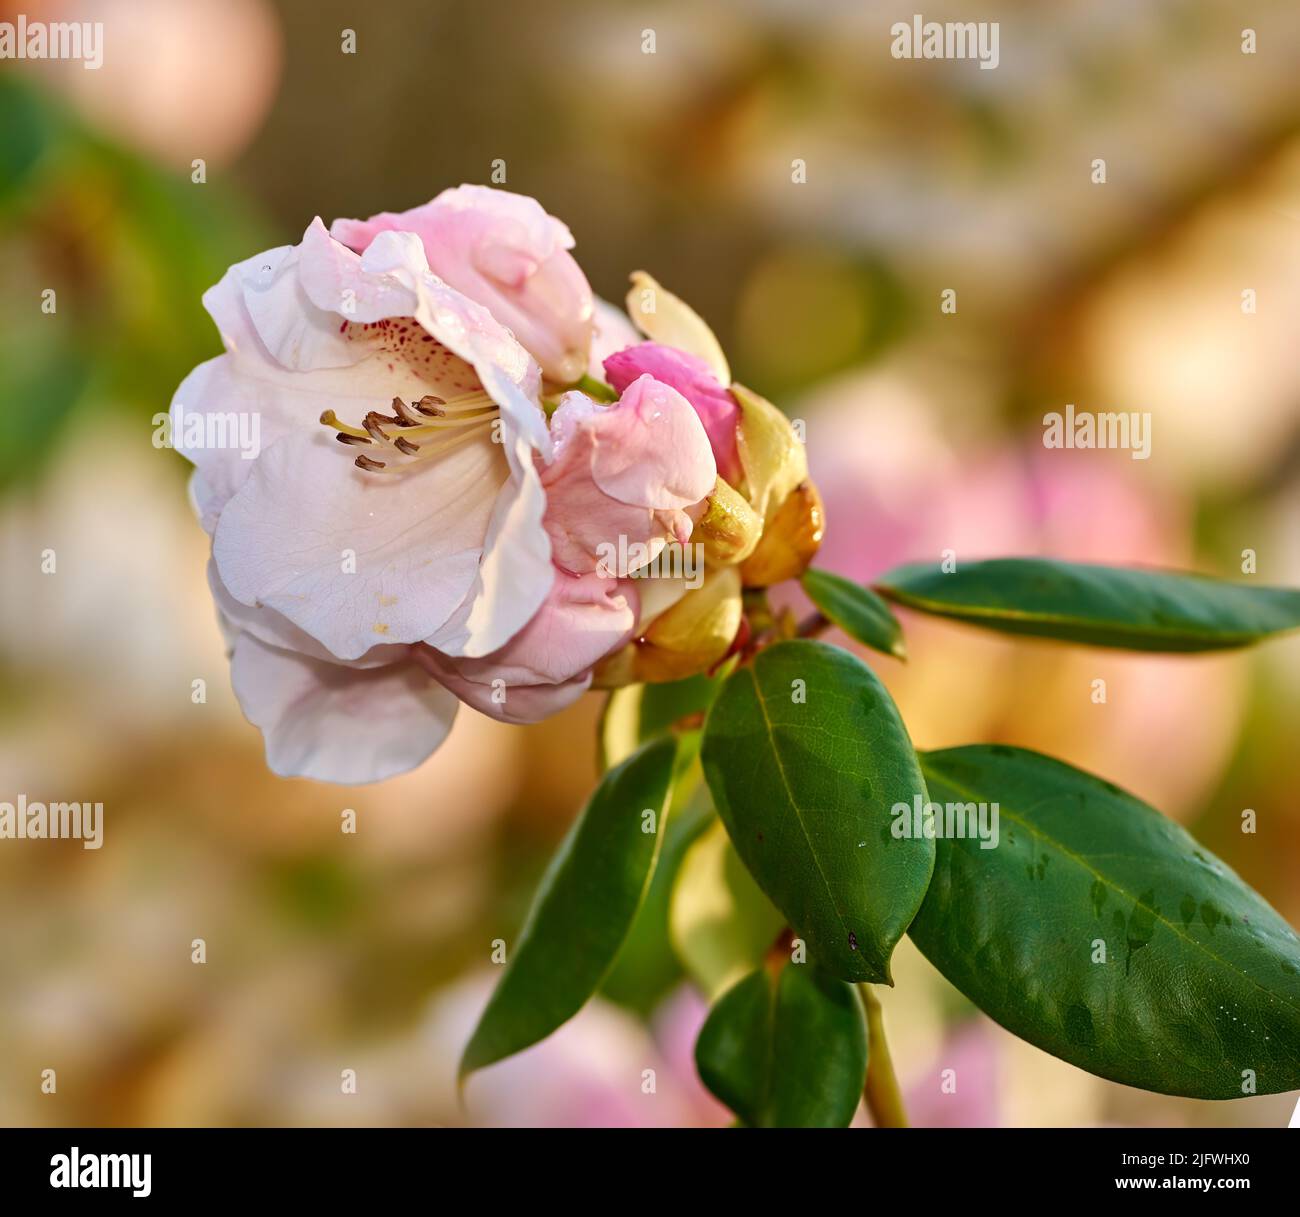 Rhododendron, genre de nombreuses espèces de plantes ligneuses de la famille de la santé. Evergreen ou feuillus, que l'on trouve principalement en Asie, mais aussi dans les Highlands du Sud Banque D'Images